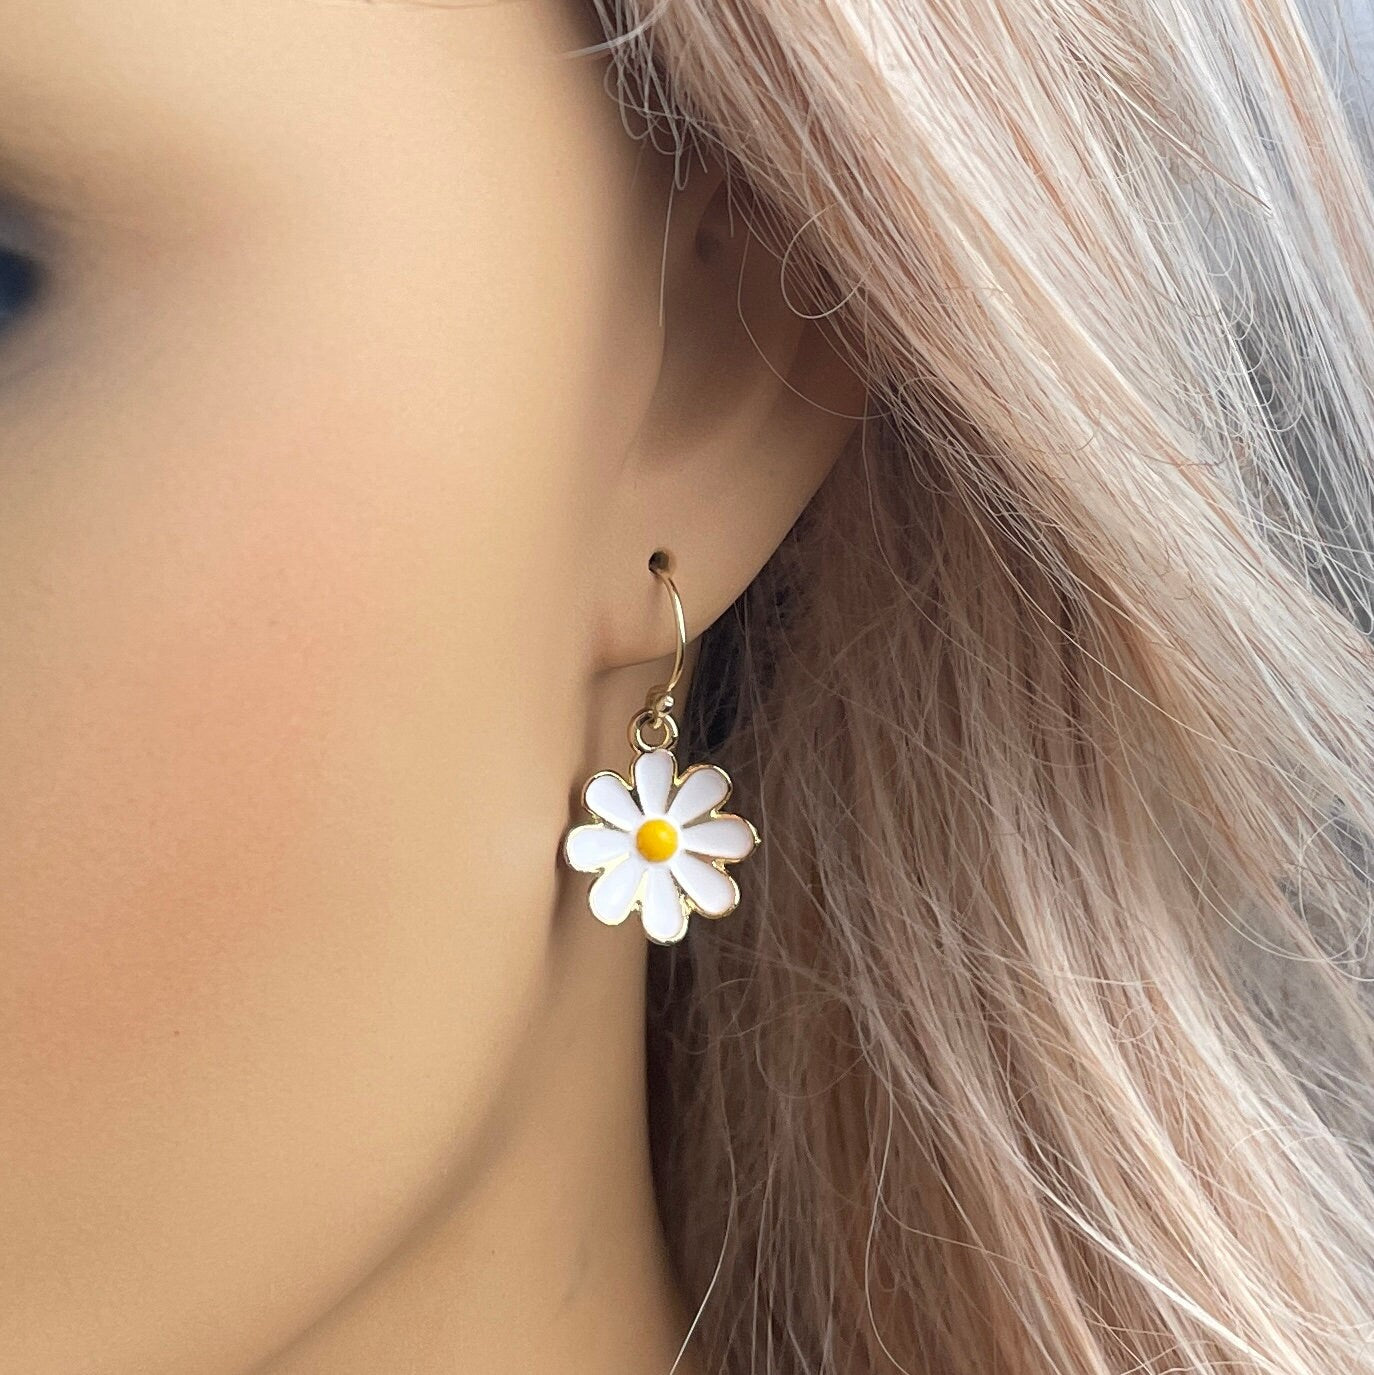 White Daisy Earrings Gold, Small Flower Charm Earring Enamel, Gifts For Her, M6-795